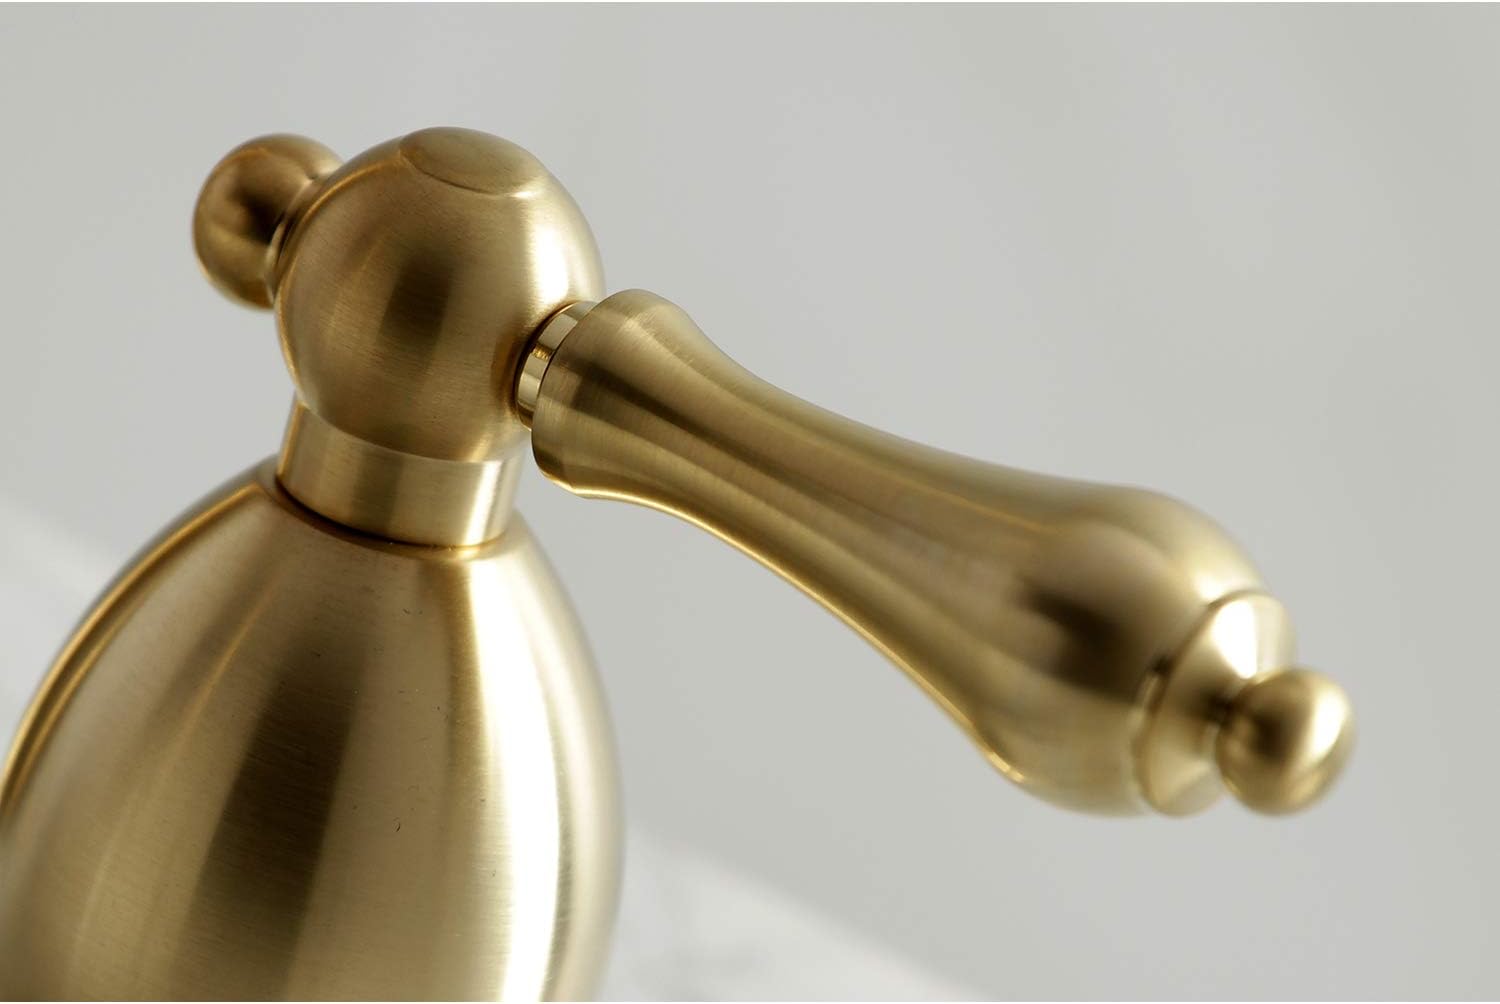 Kingston Brass KS1977AL 8 in. Widespread Bathroom Faucet, Brushed Brass - like new